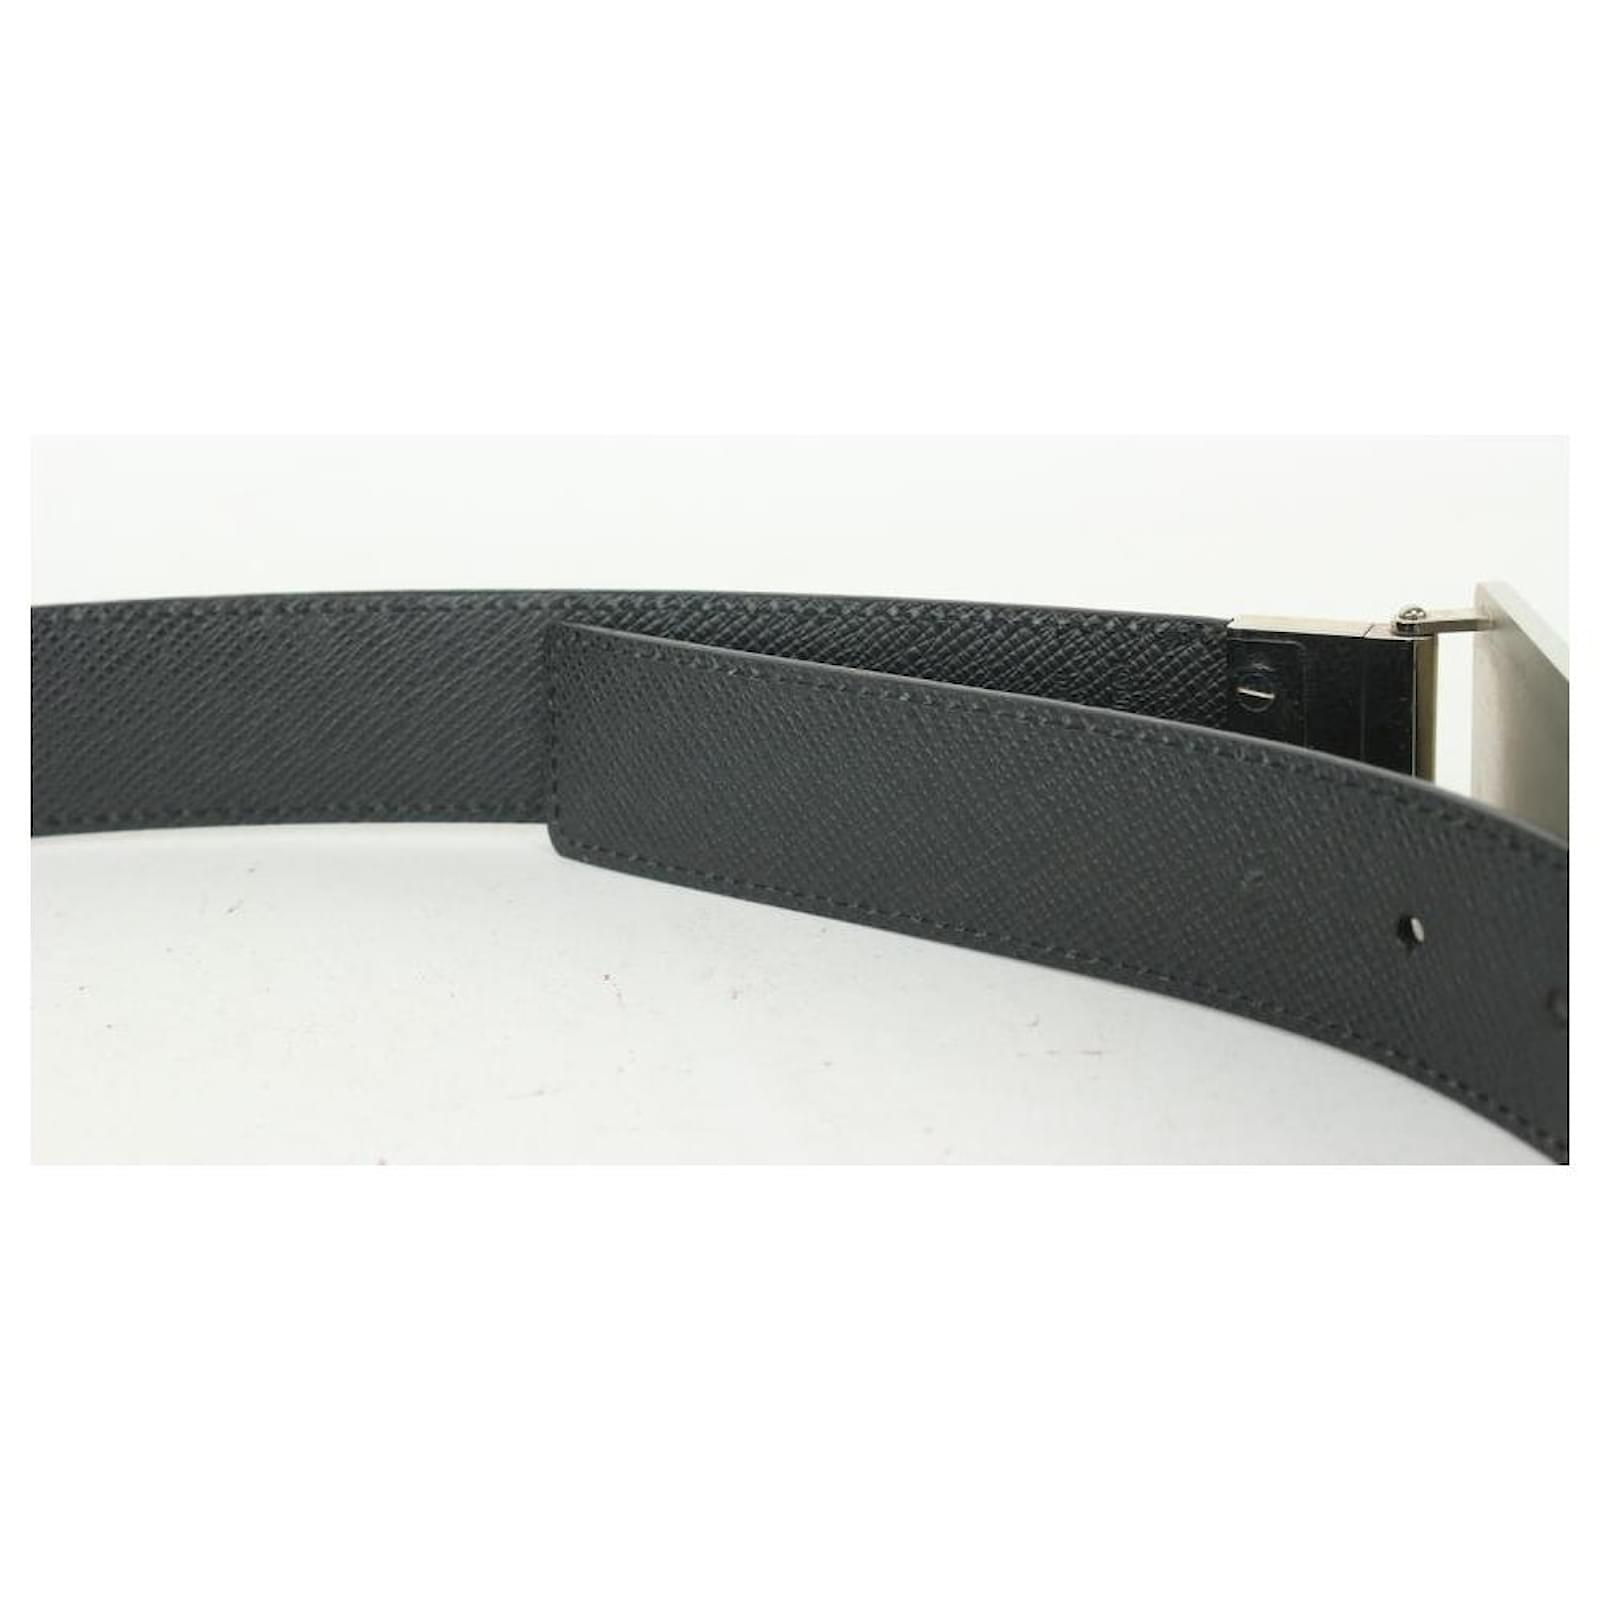 Louis Vuitton Brown Inventeur Reversible Belt 95/38 + more sizes